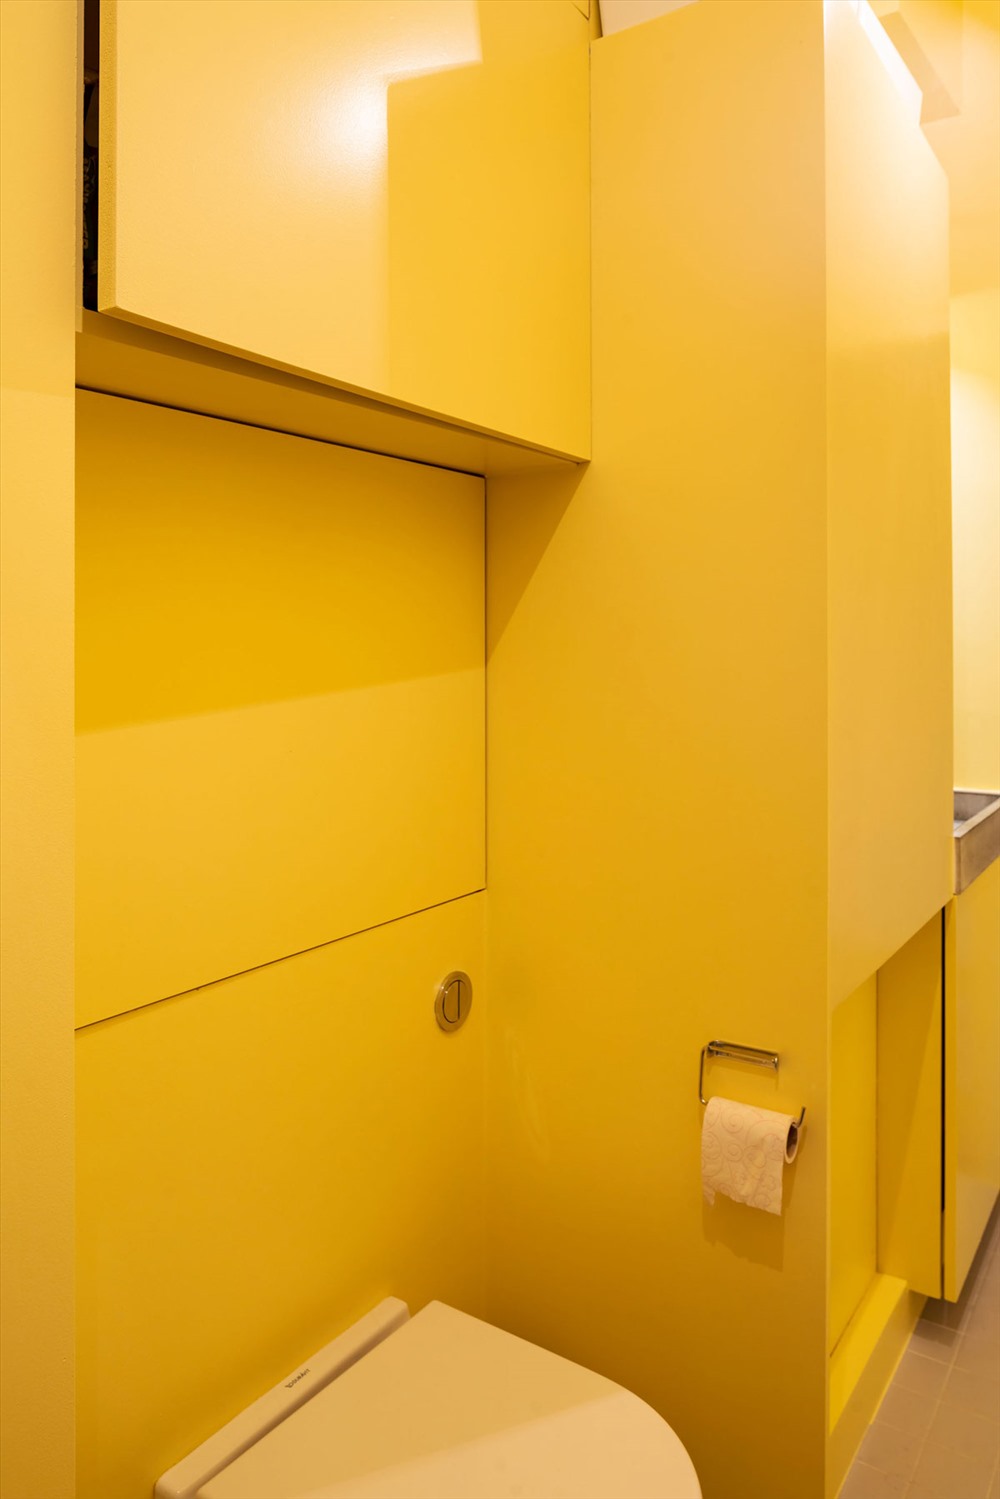 Màu vàng cũng được lựa chọn để trang trí nhà vệ sinh và nhà tắm hiện đại.